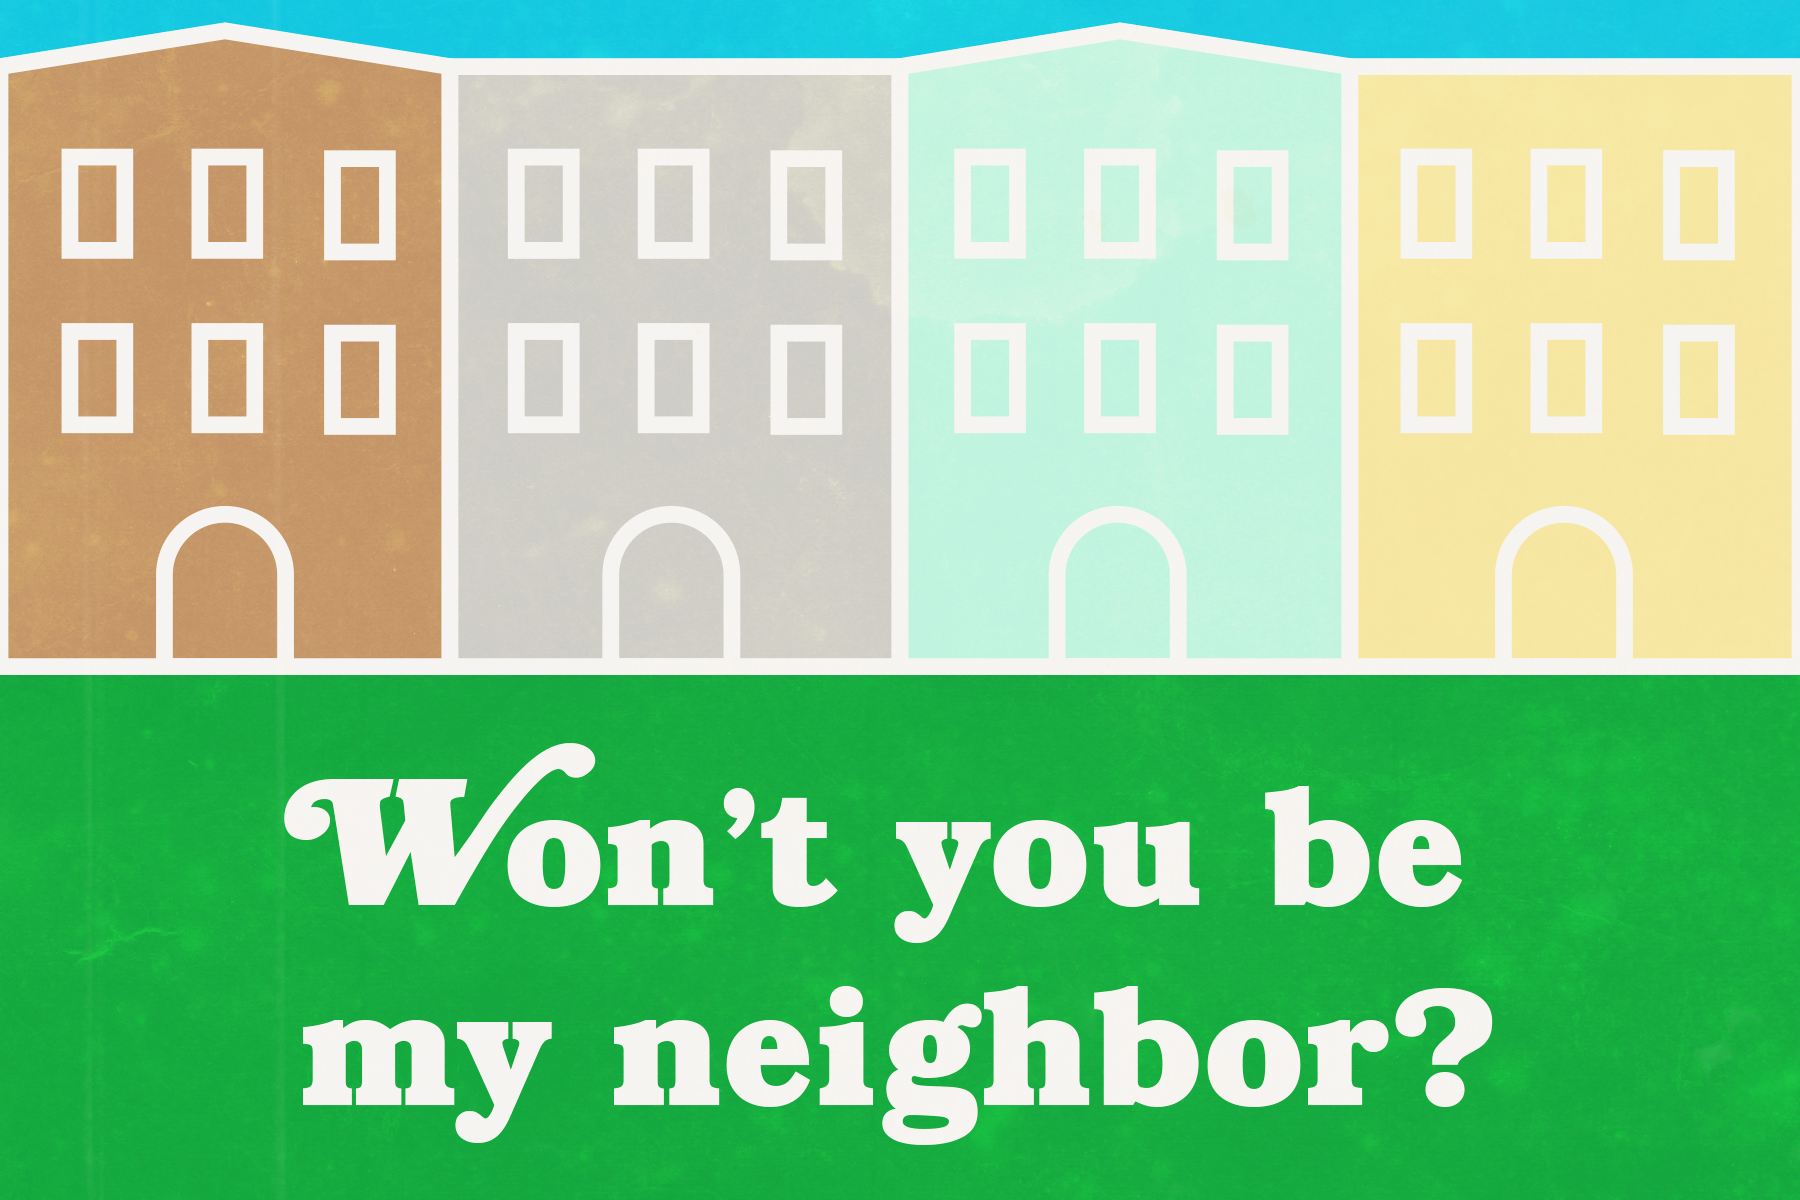 Be my neighbor?